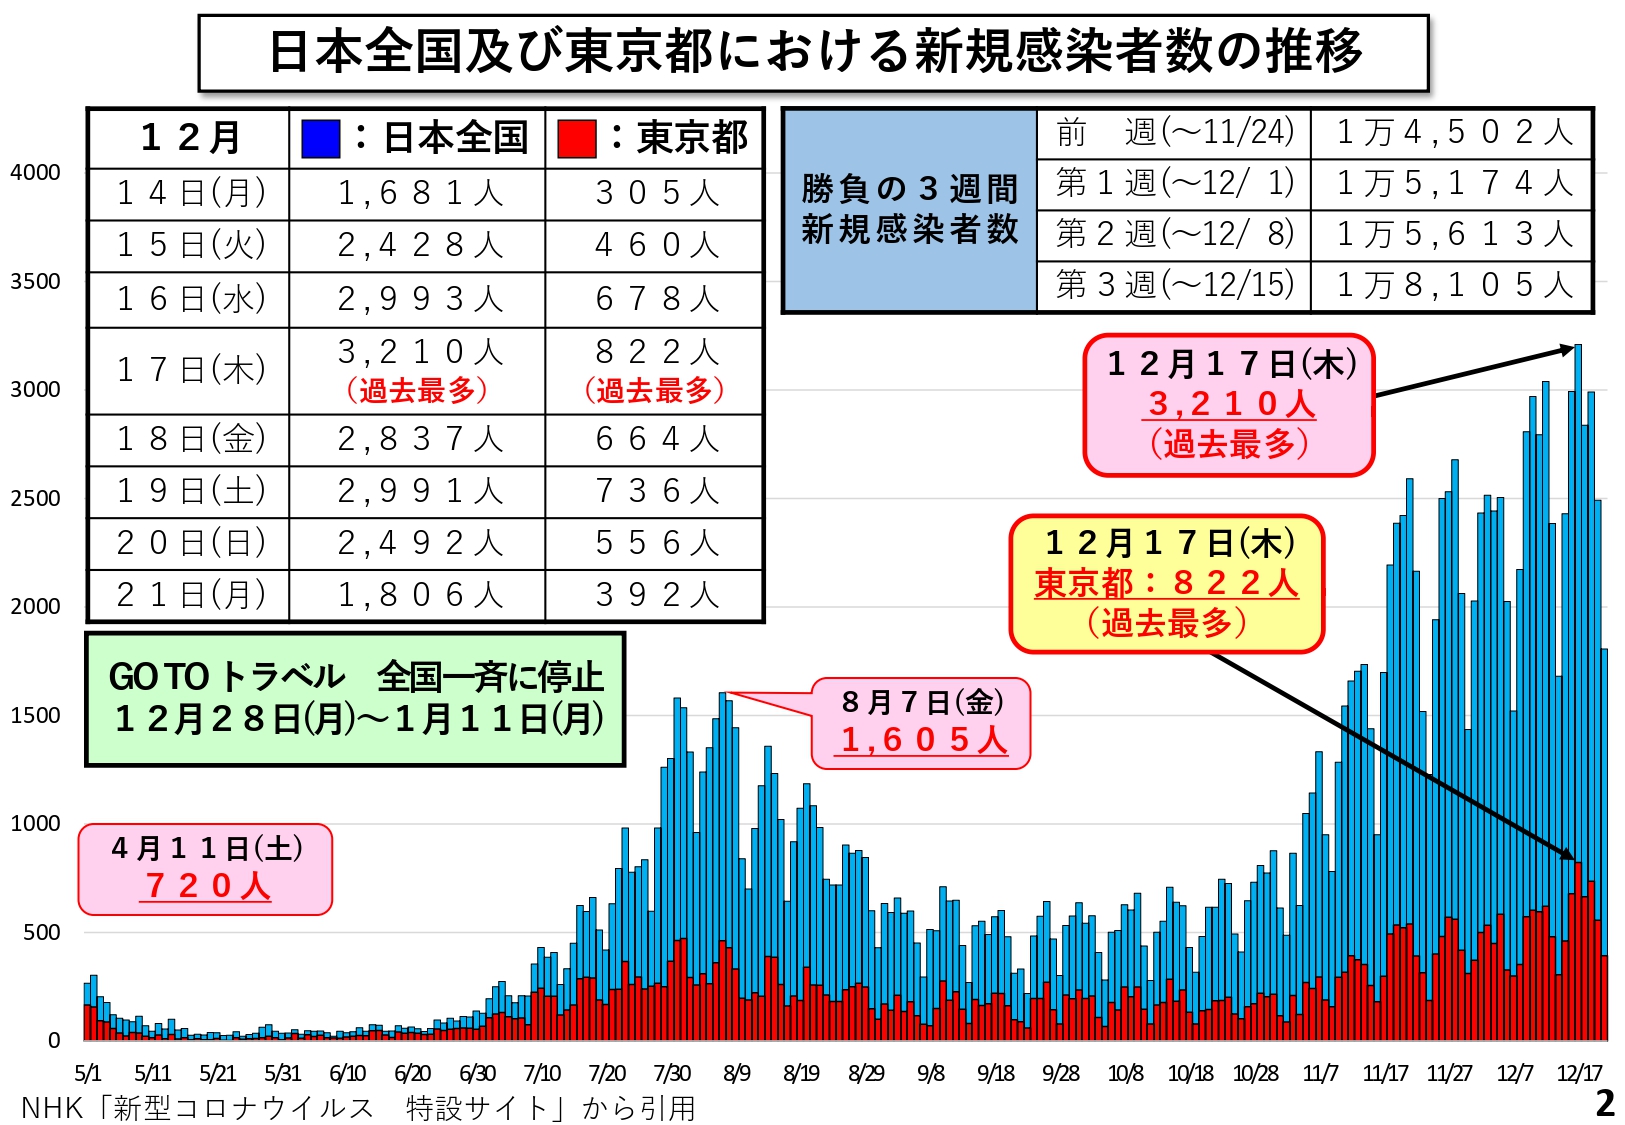 日本全国及び東京における新規感染者数の推移